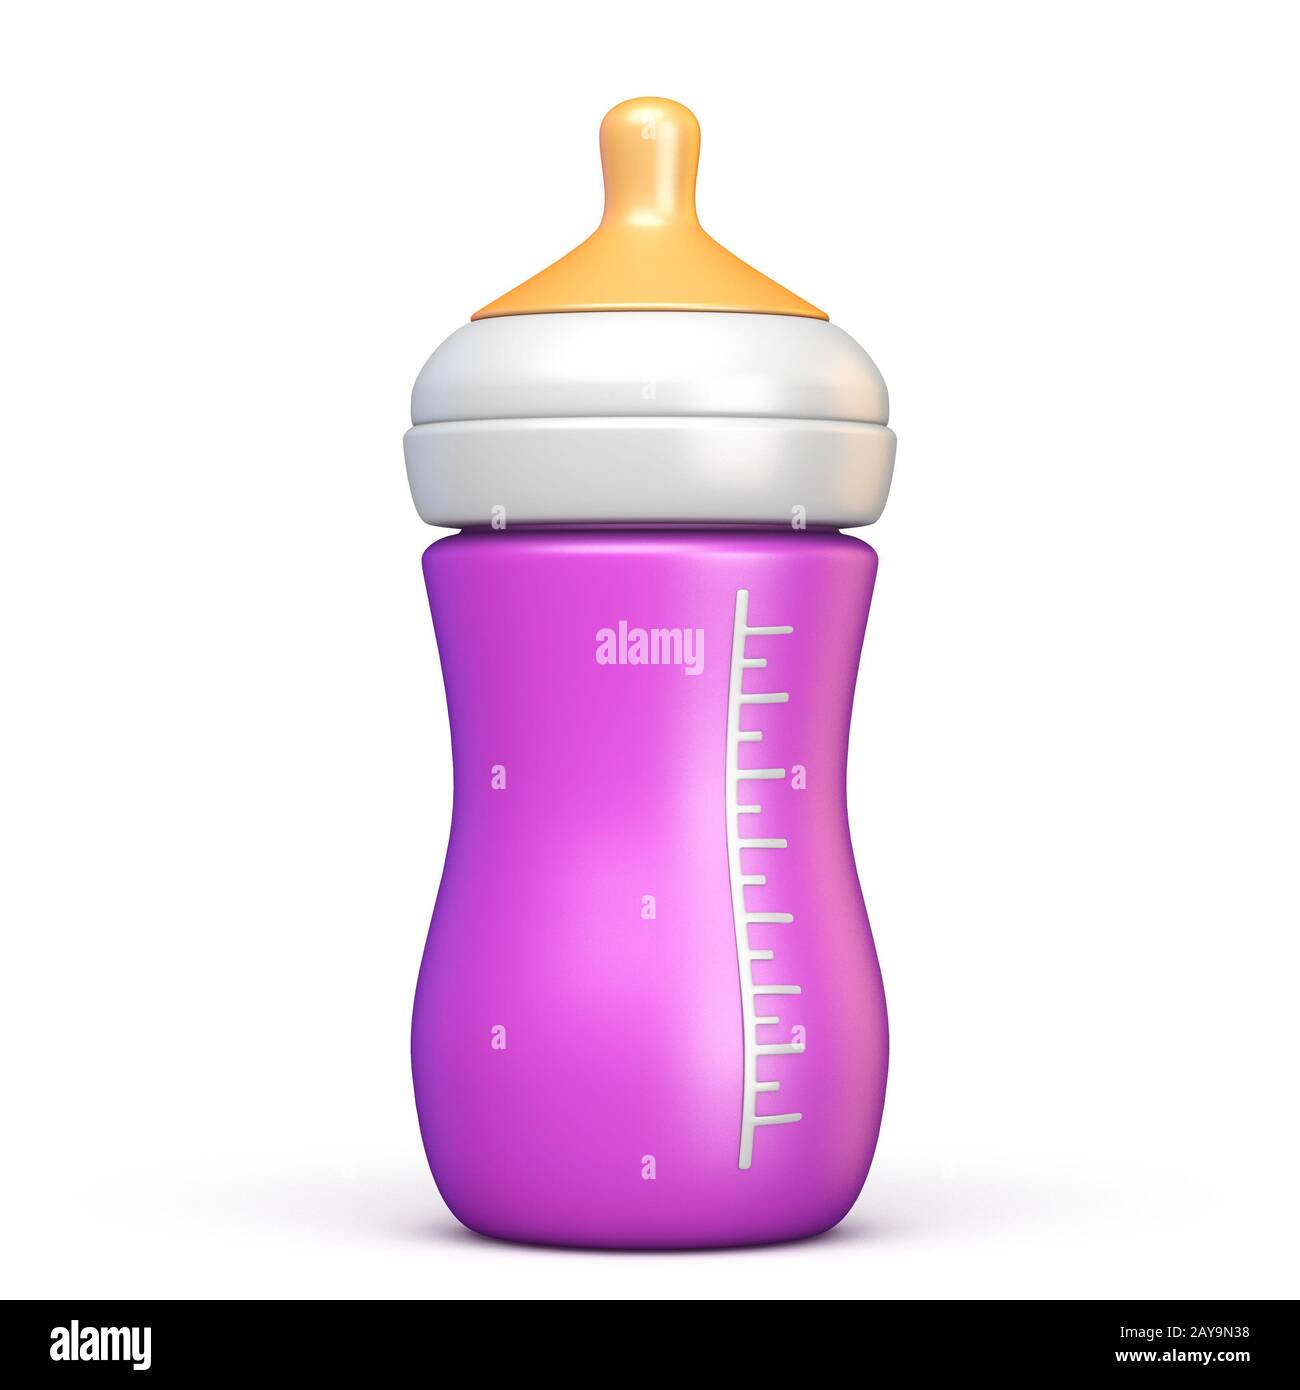 https://c8.alamy.com/comp/2AY9N38/pink-baby-bottle-3d-2AY9N38.jpg